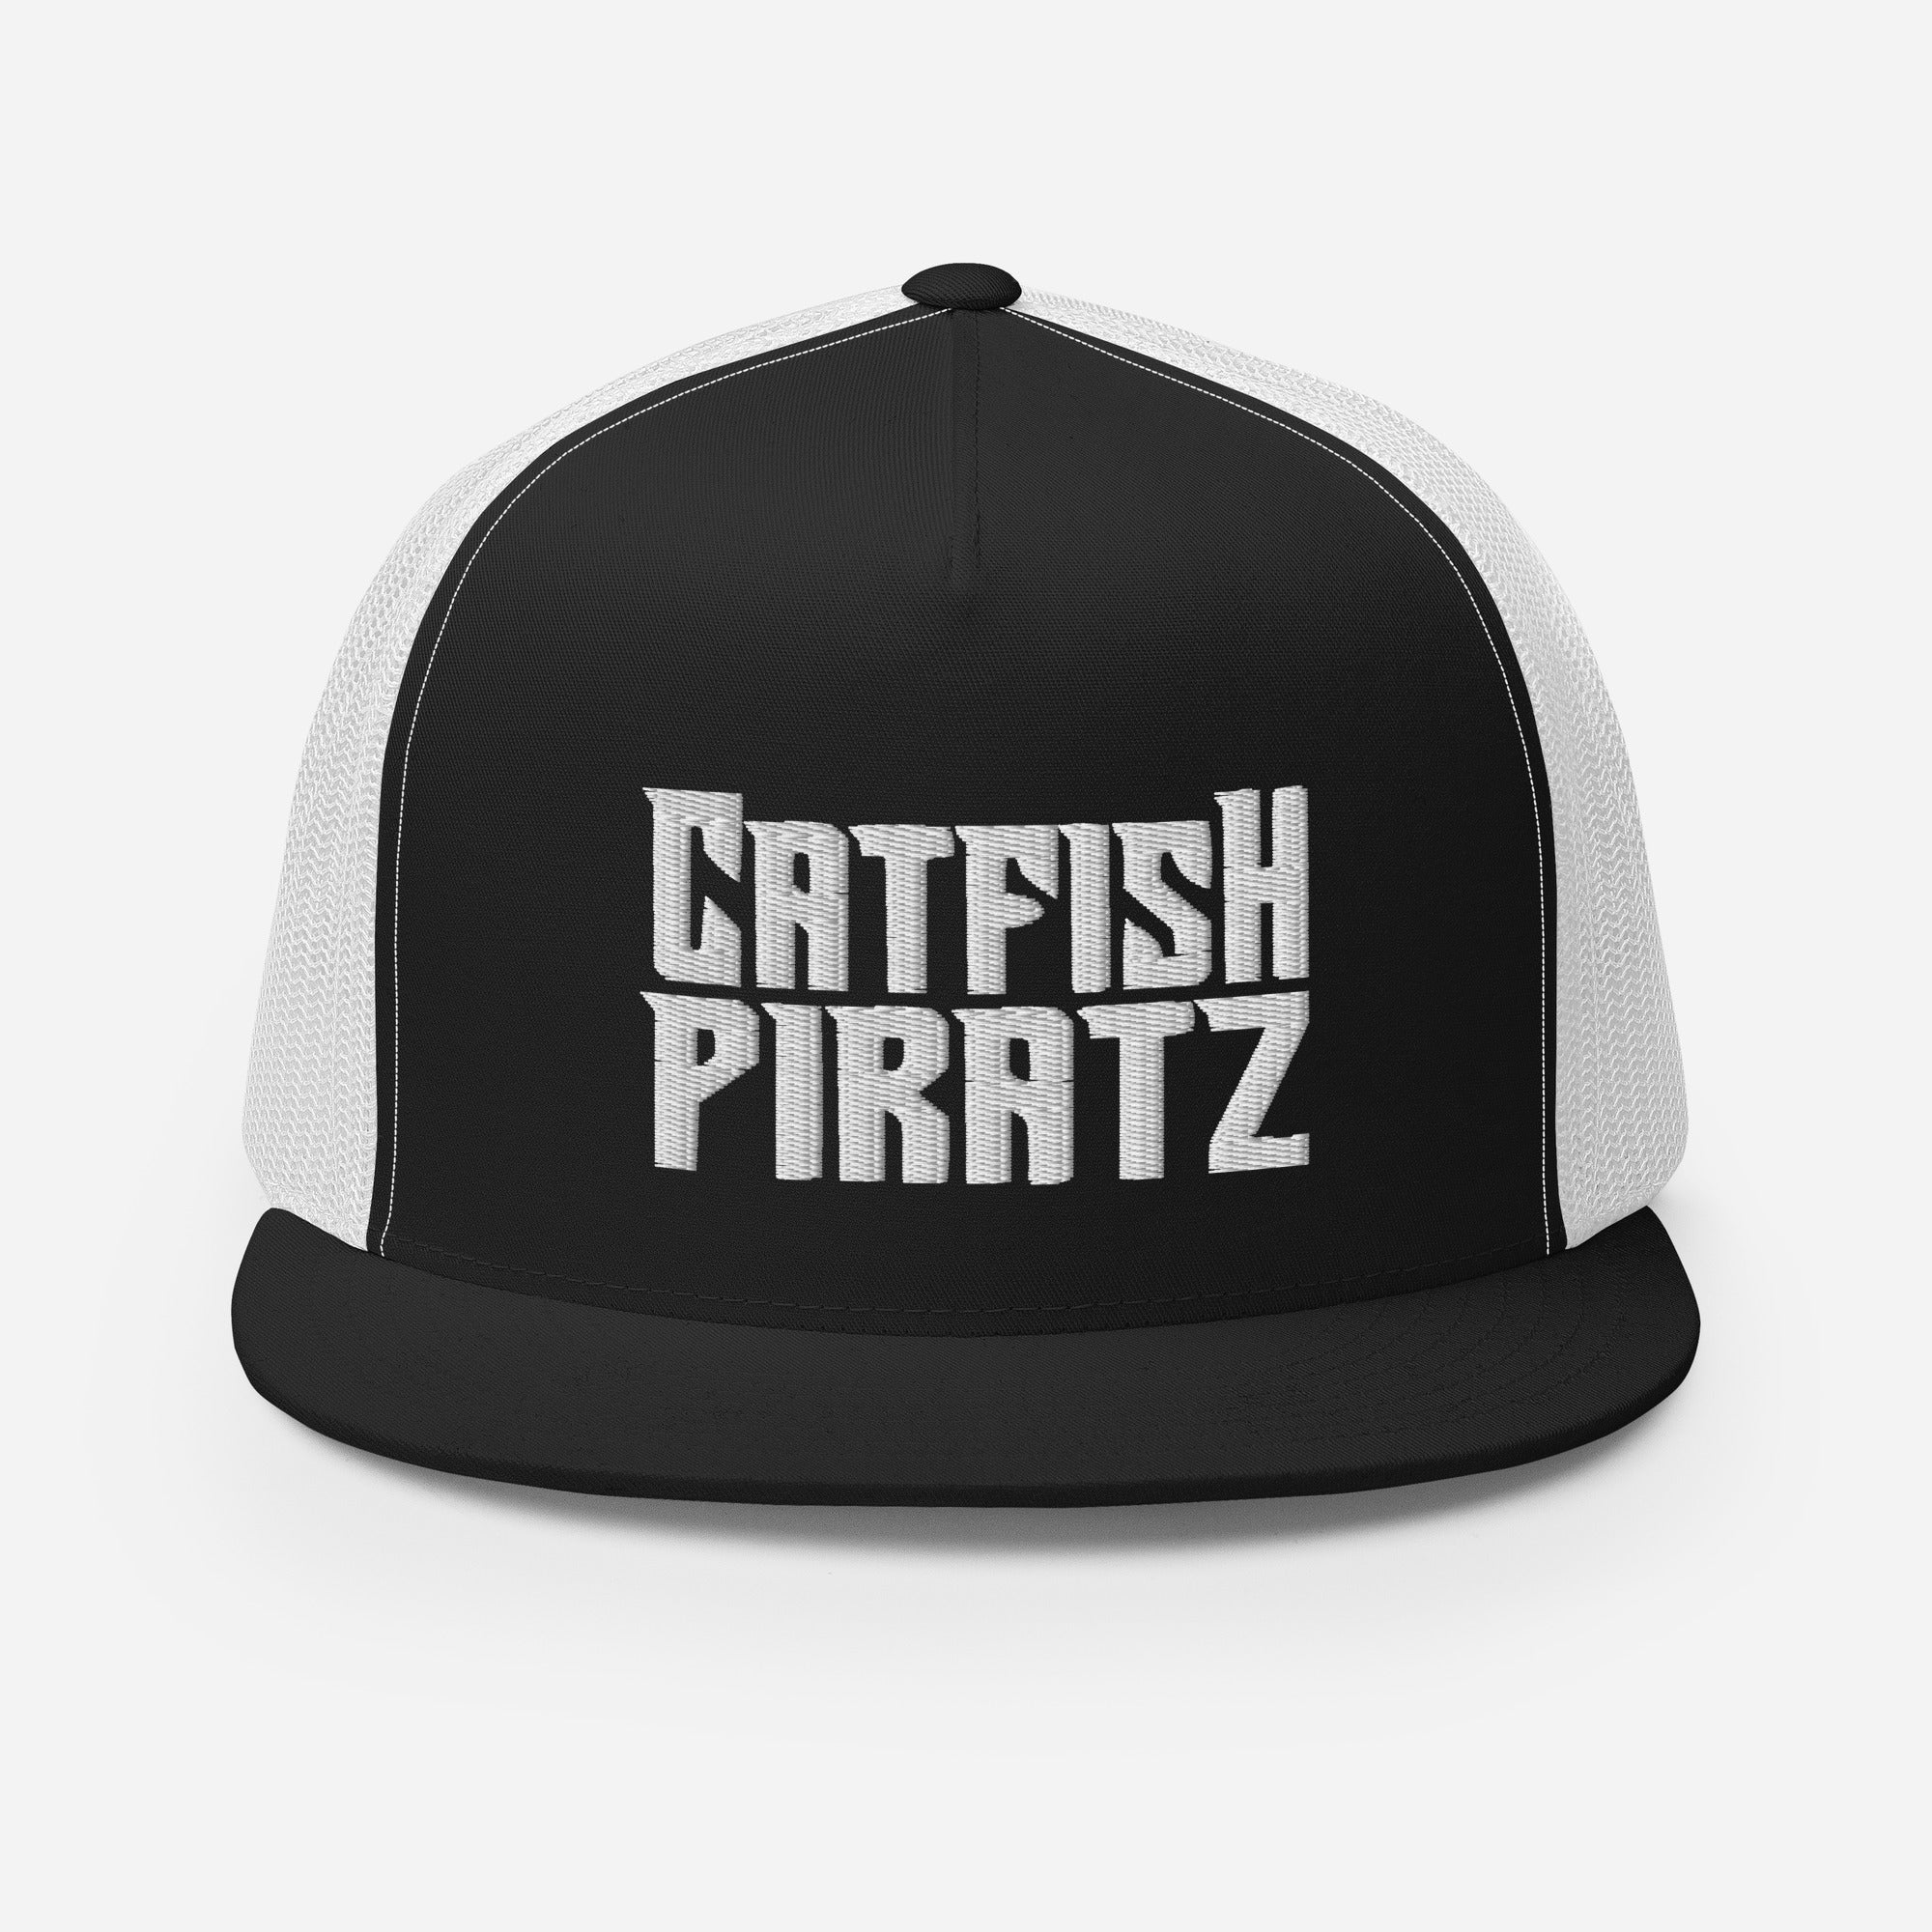 Catfish Pirates Trucker Cap